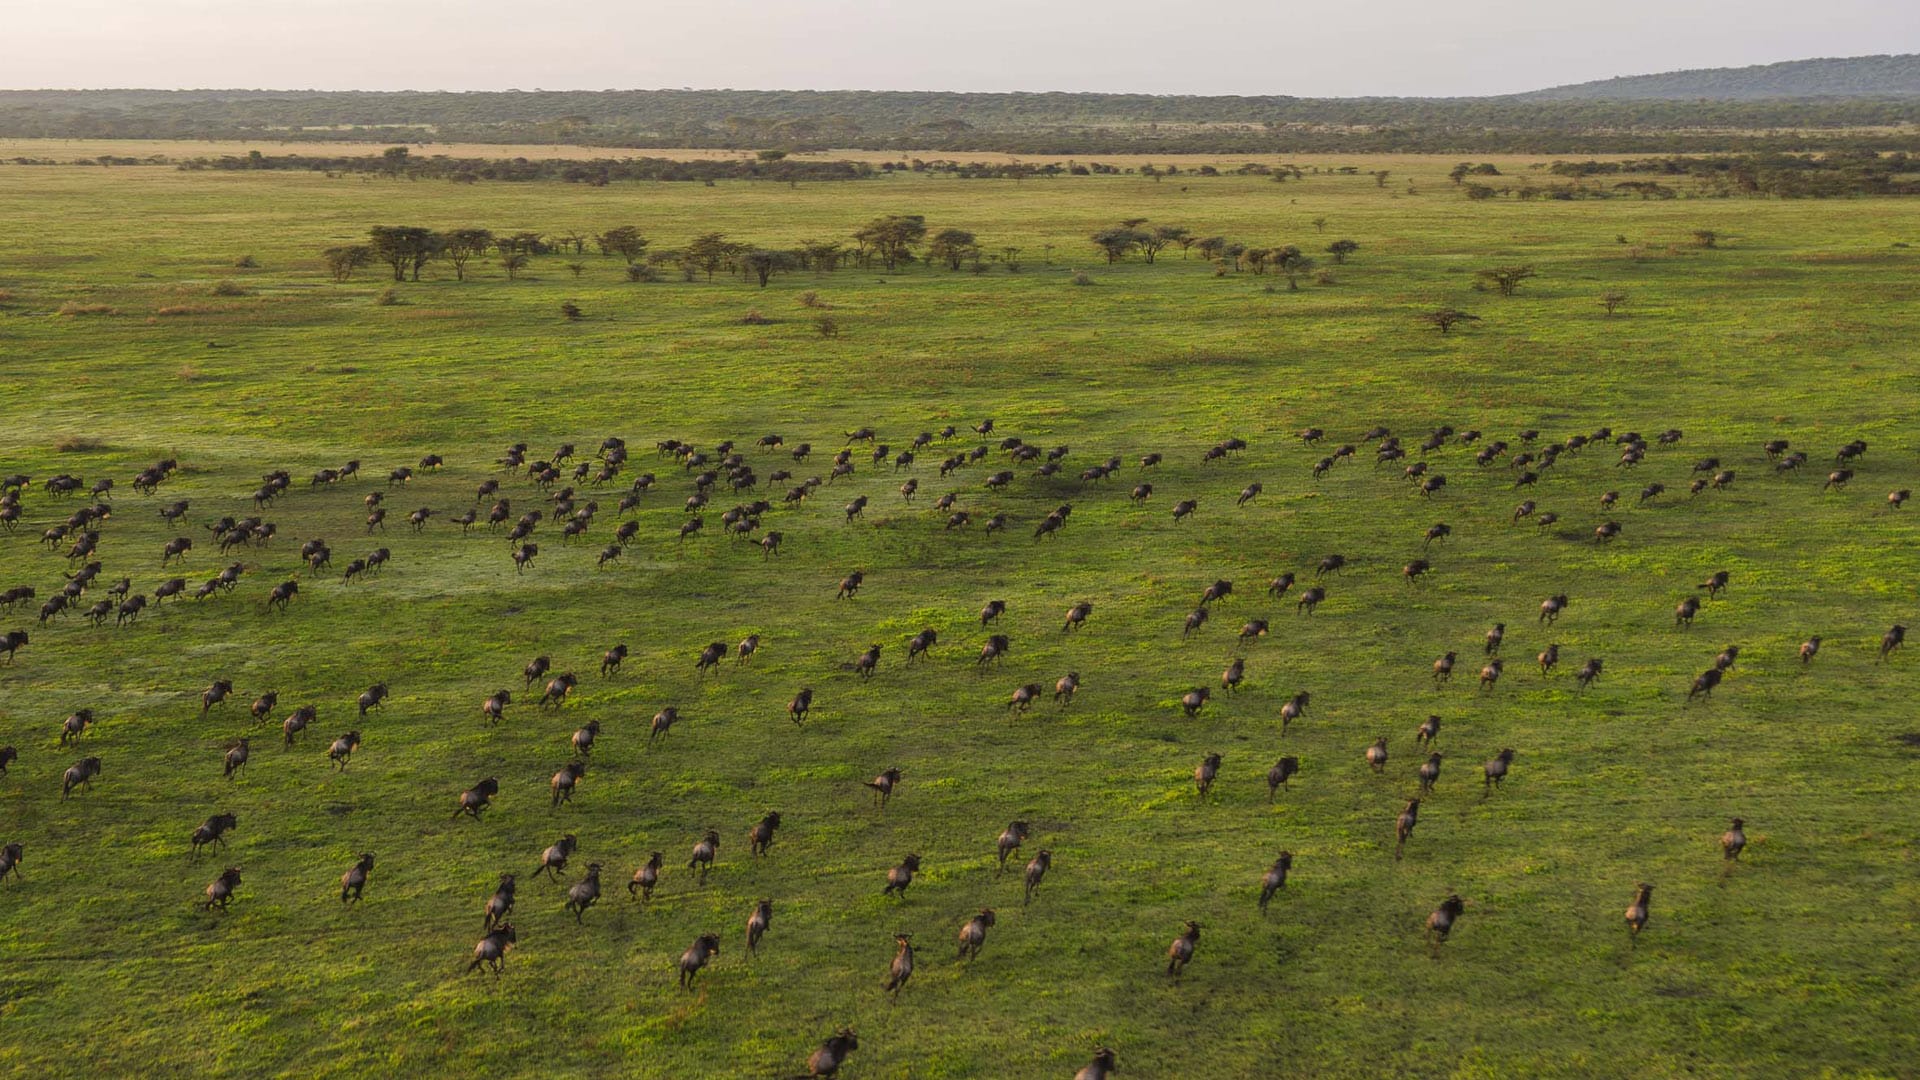 Wildebeest Herds